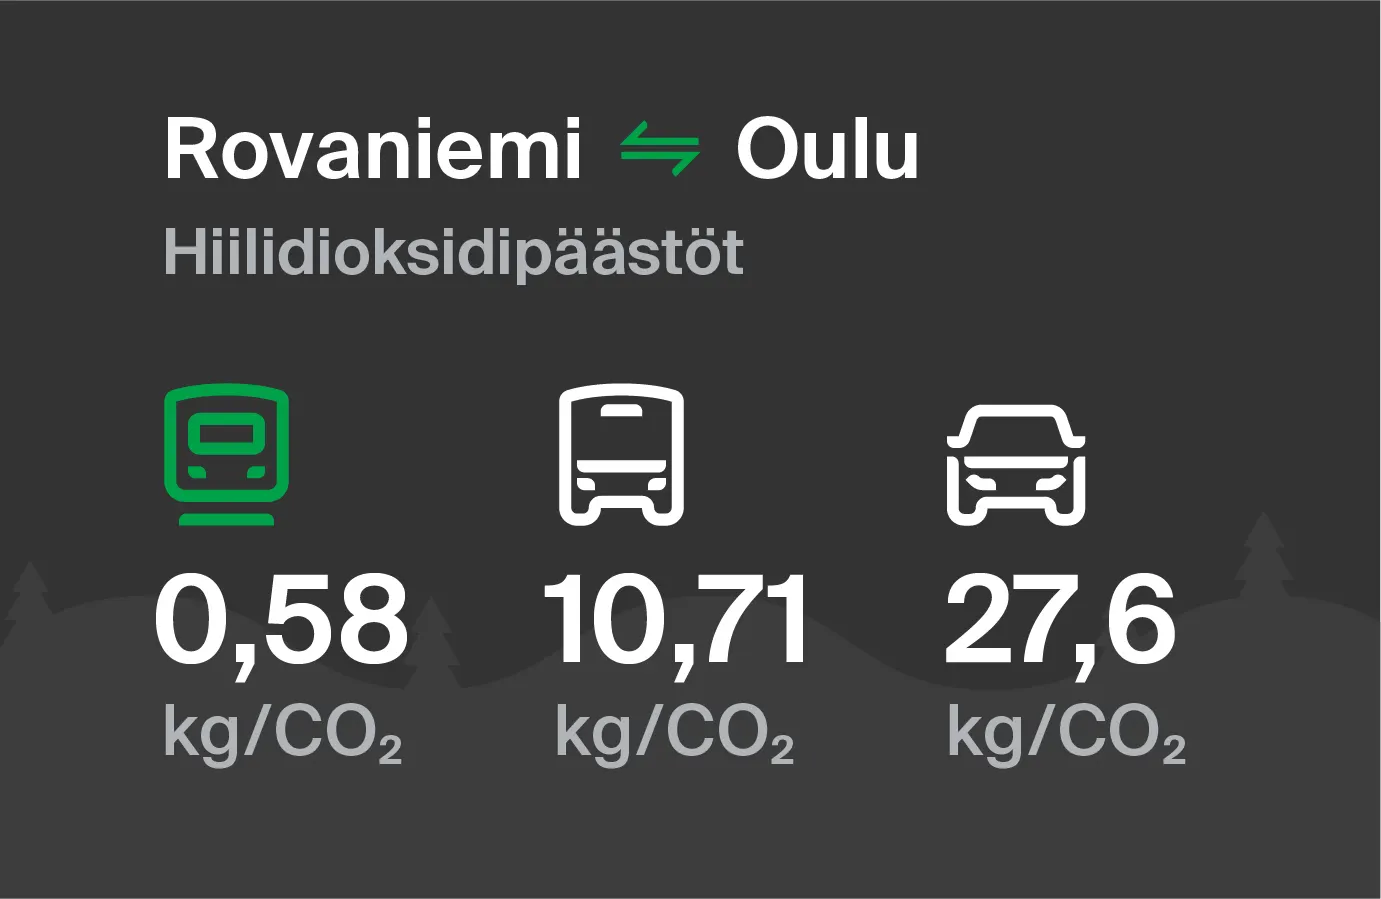 Hiilidioksidipäästöt Rovaniemeltä Ouluun eri kulkuvälinemuodoilla: junalla 0,58 kg/CO2, bussilla 10,71 kg/CO2 ja autolla 27,6 kg/CO2.